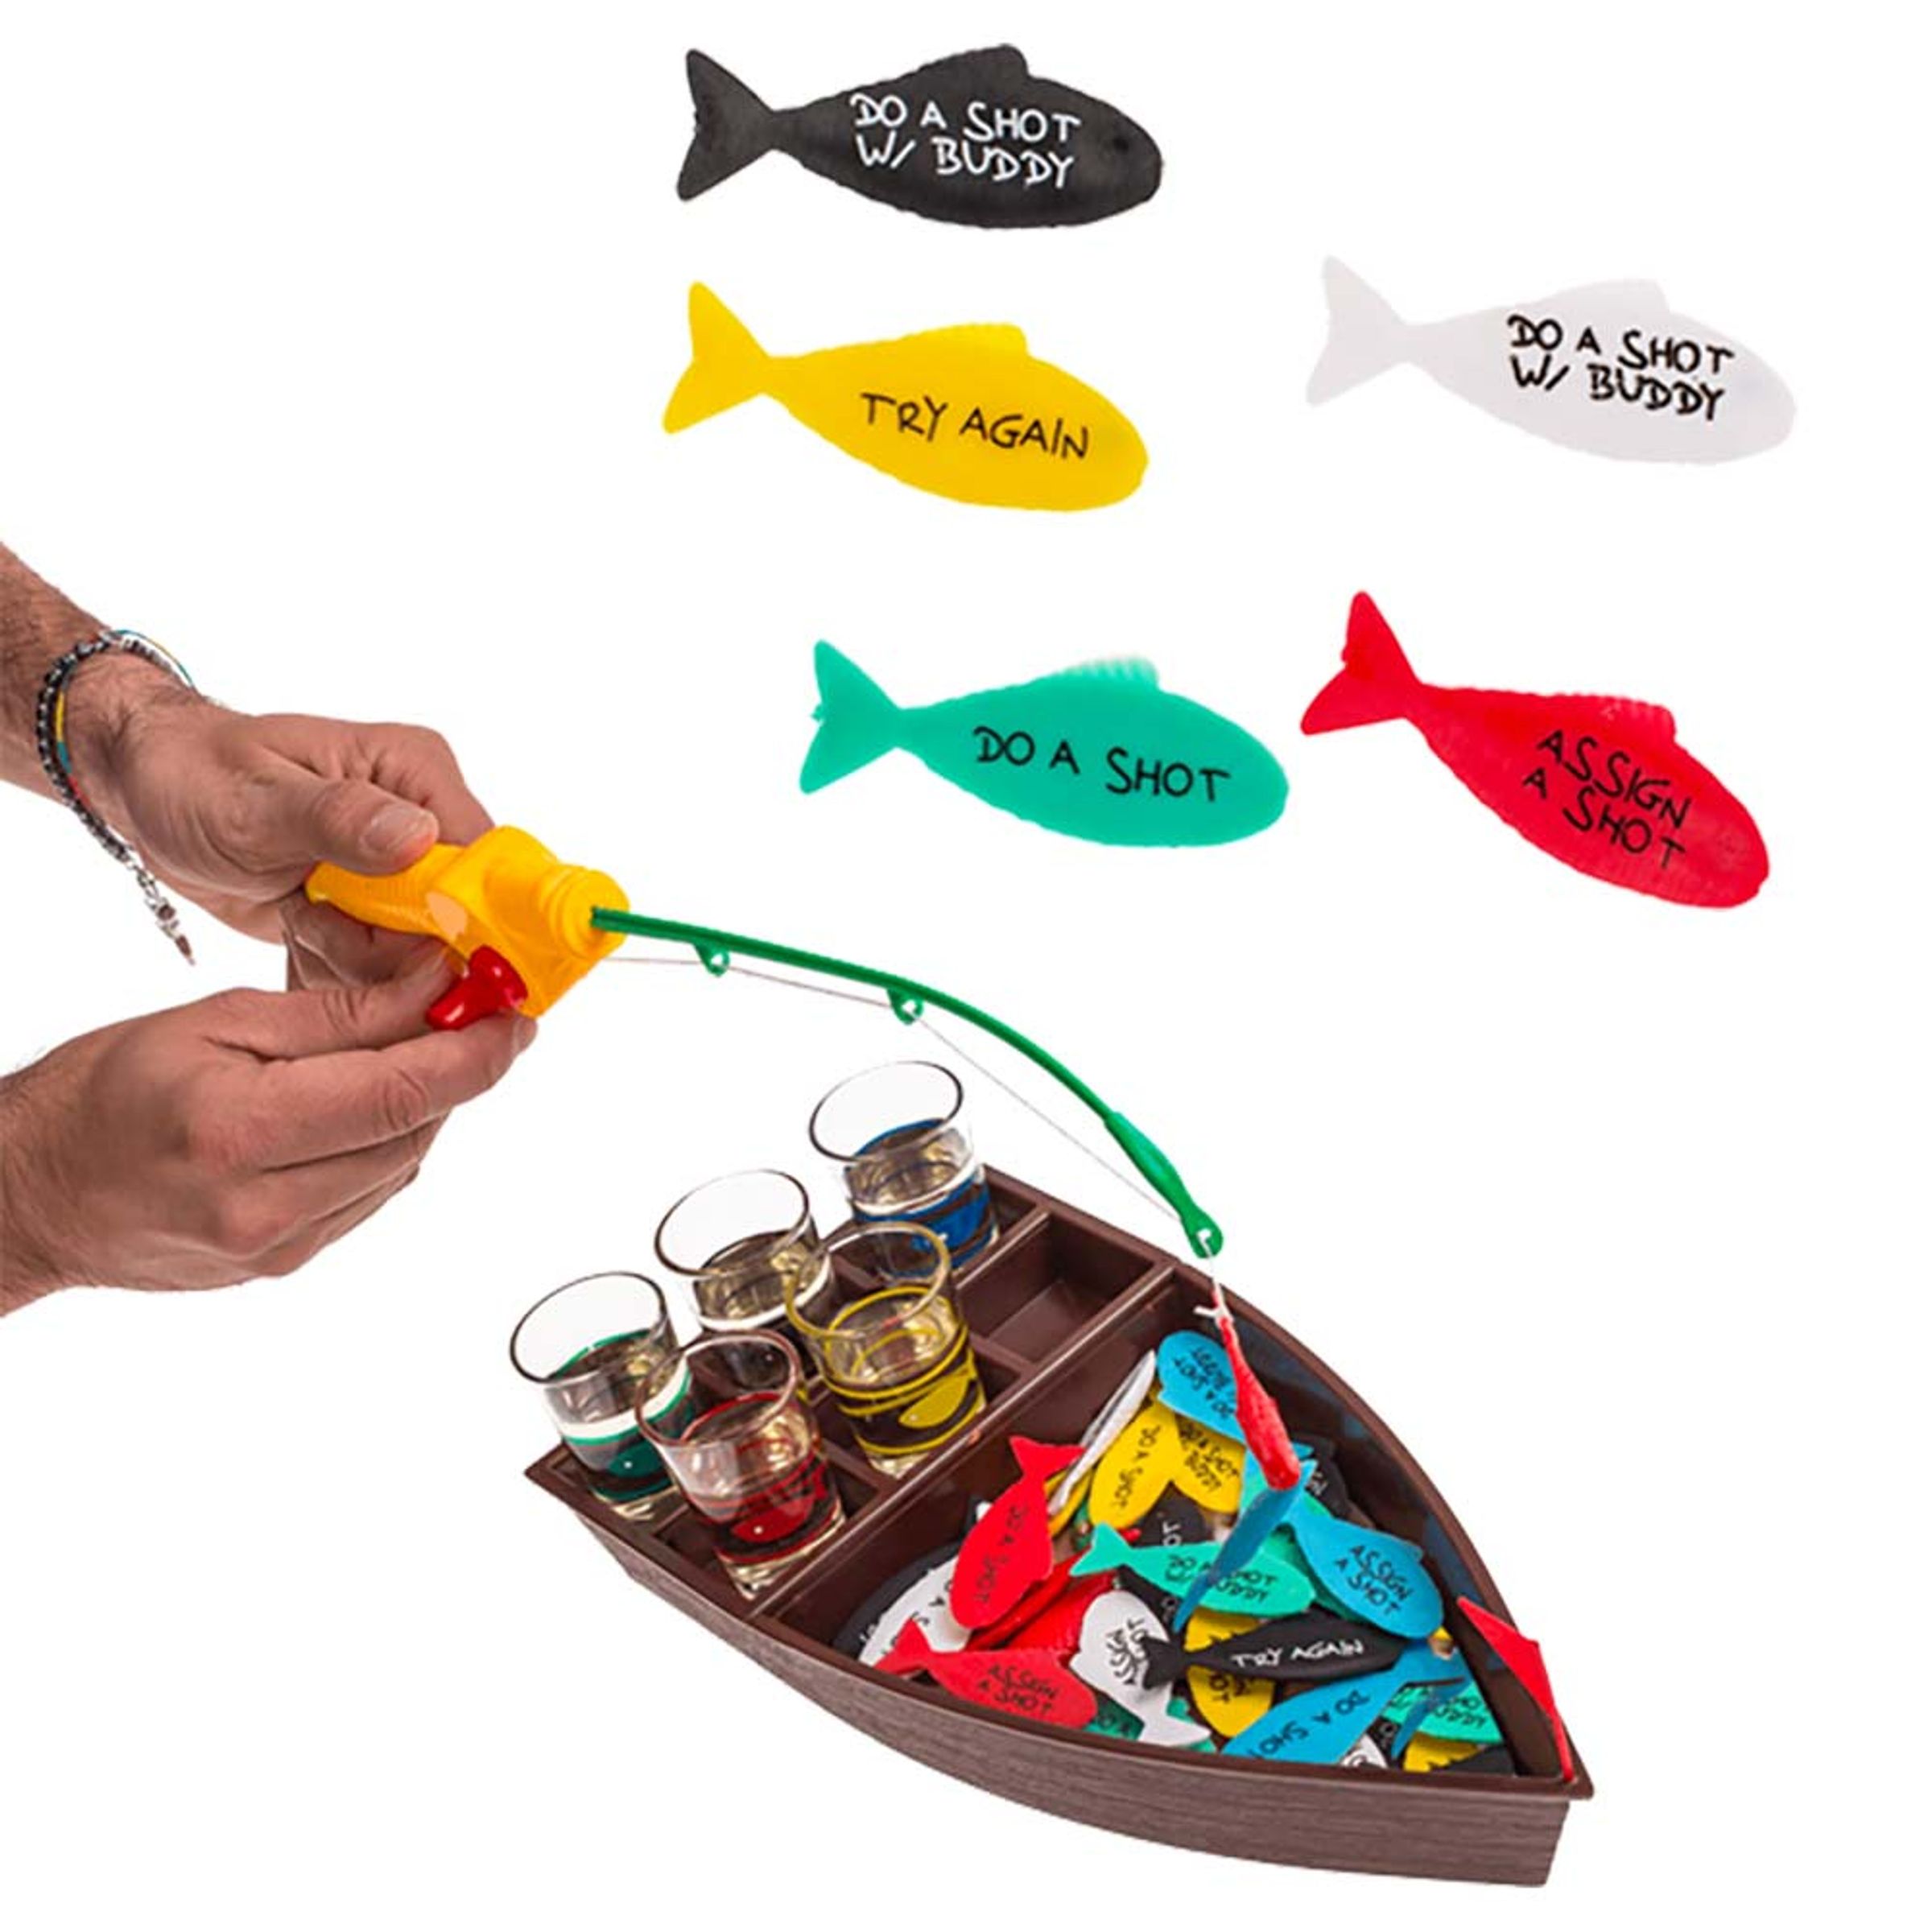 Läs mer om Shot Fishing Dryckesspel